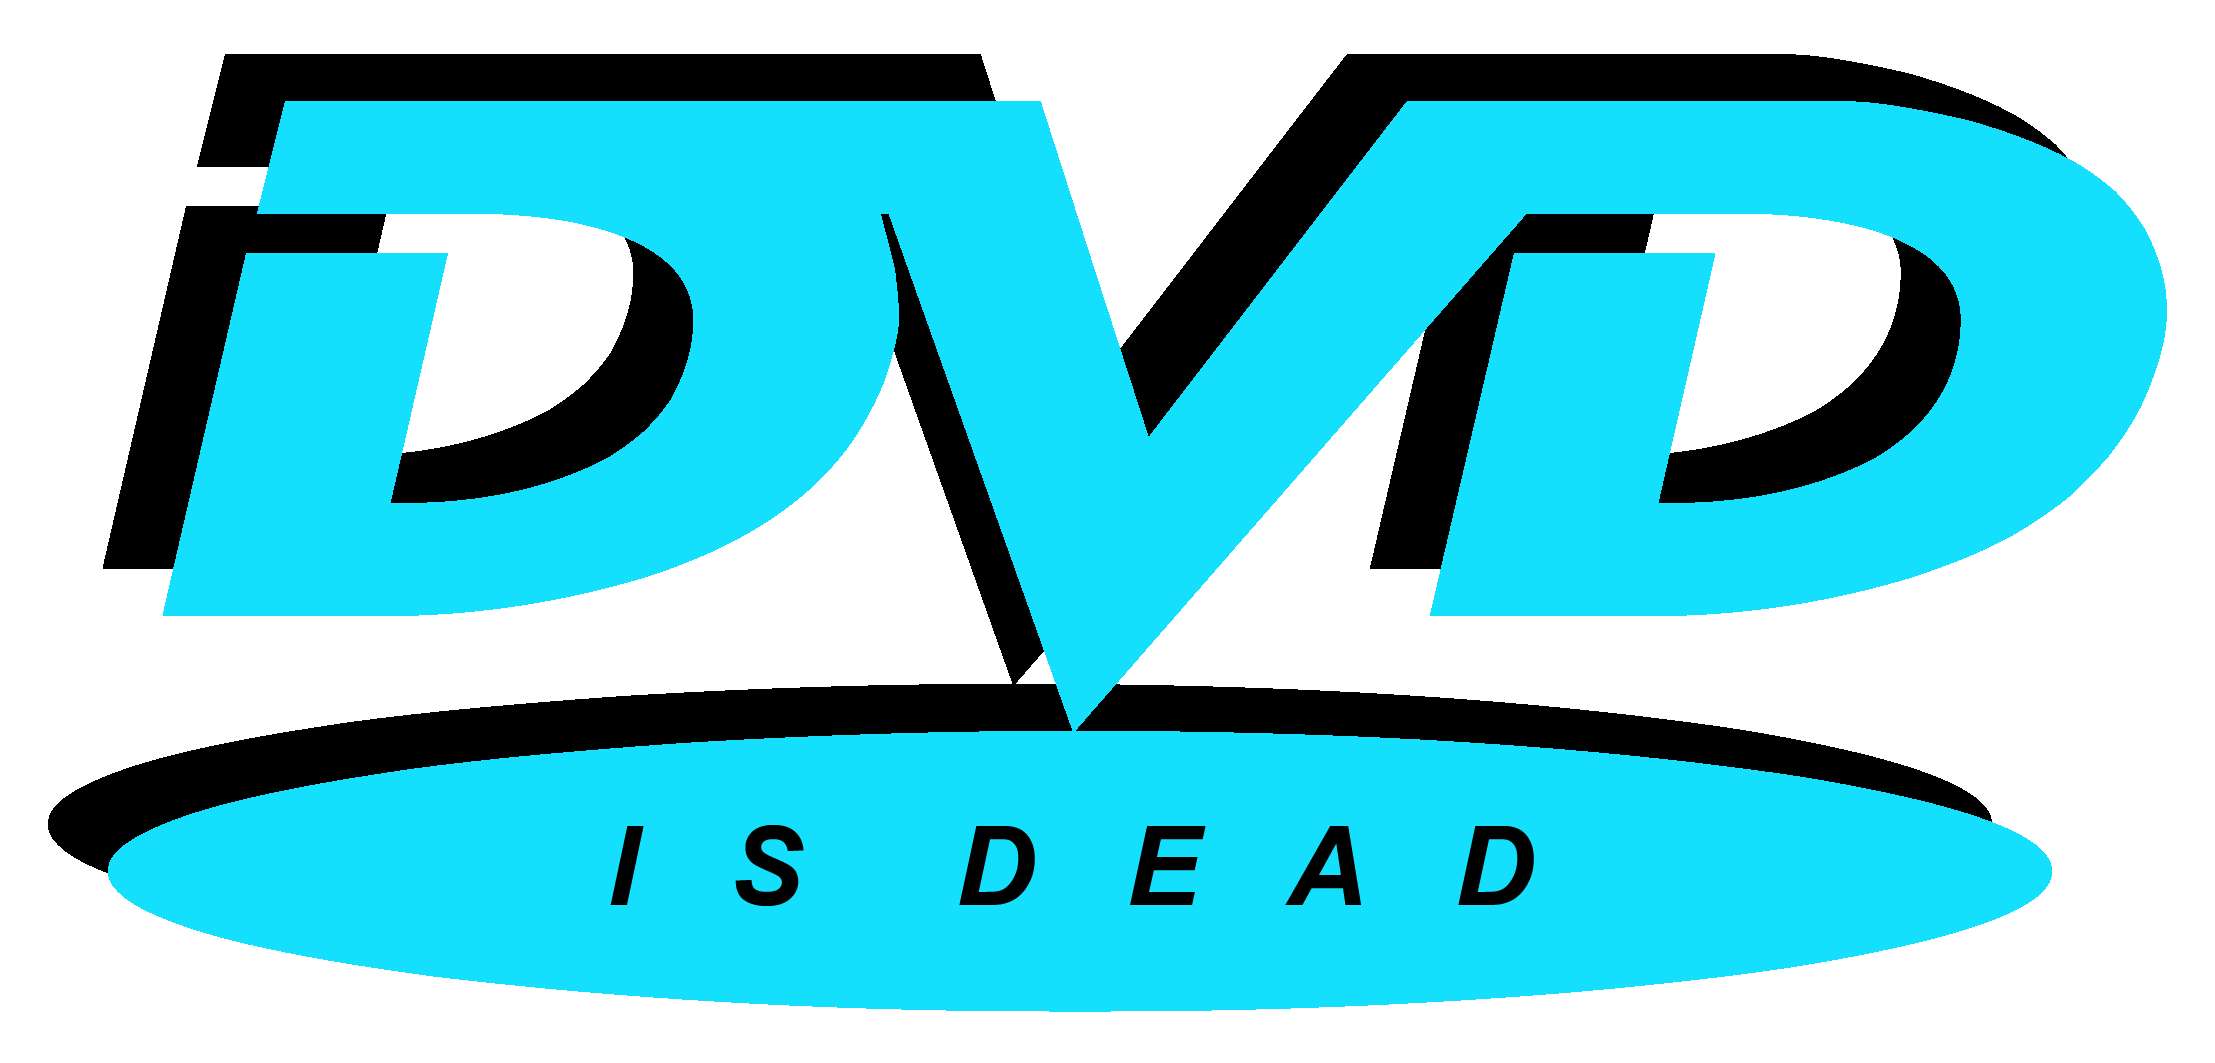 Dvd Logos